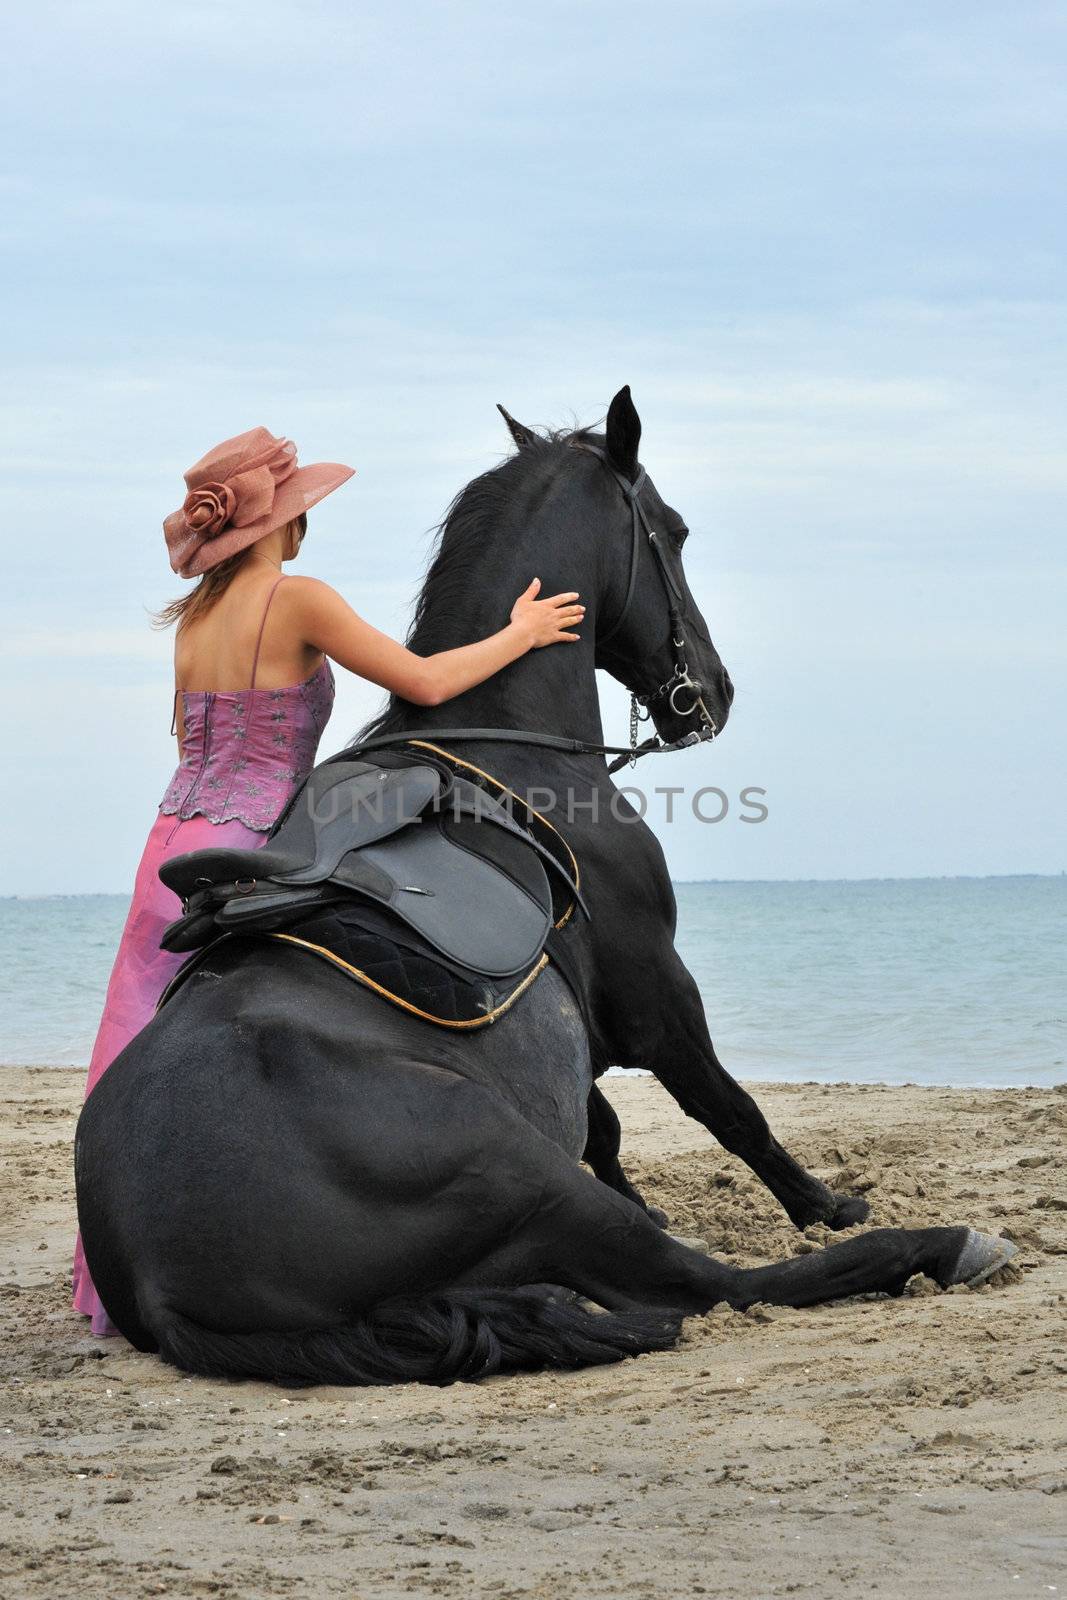 sitting horse on the beach by cynoclub